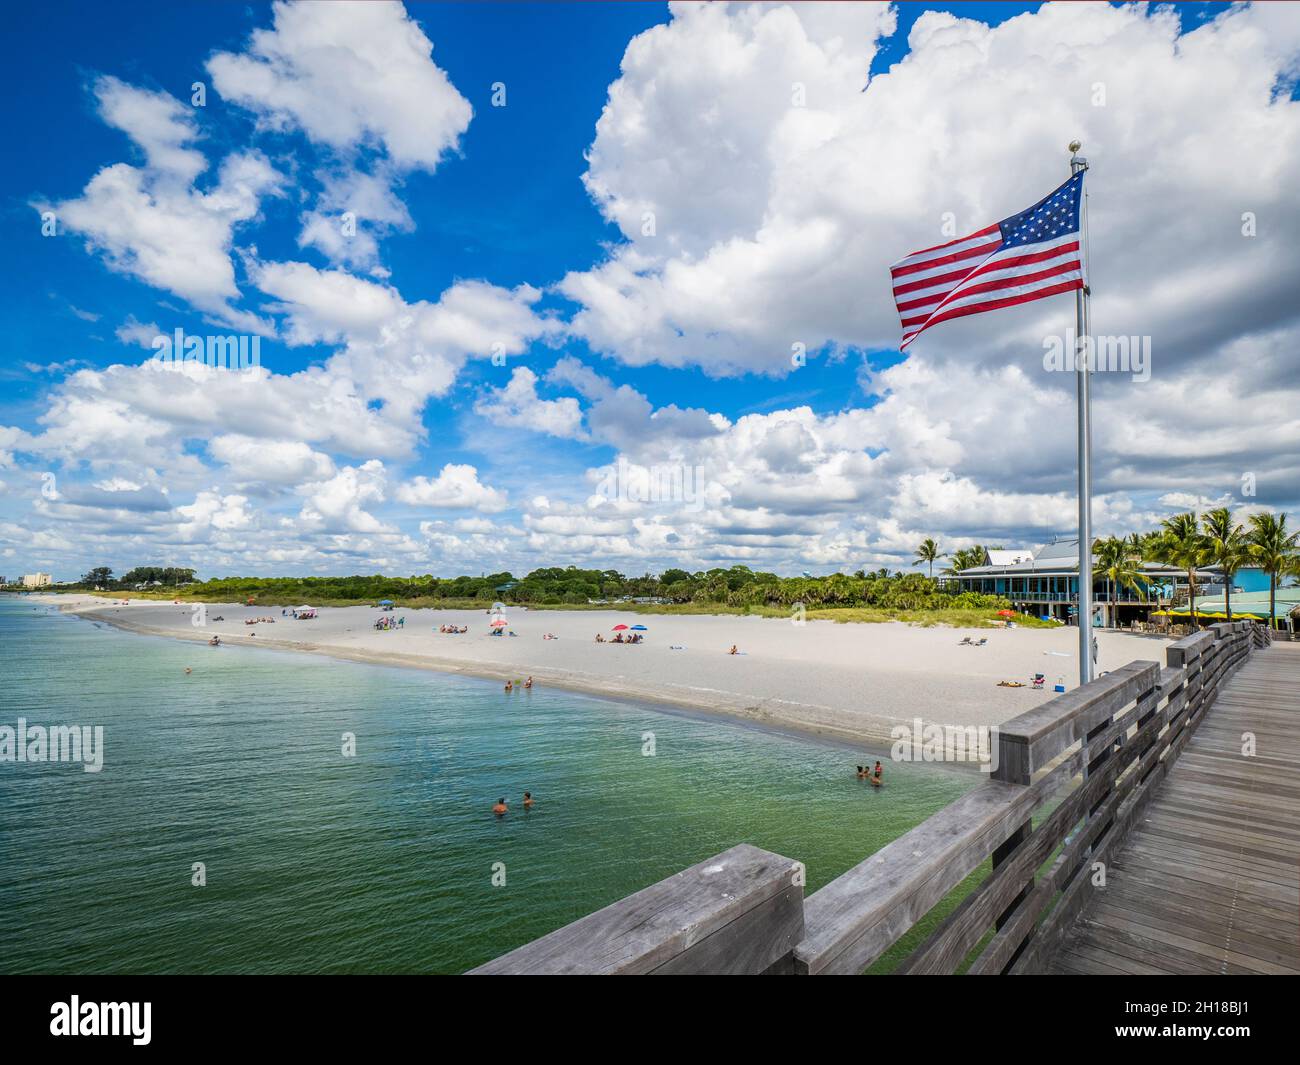 Spiaggia di Venezia sul Golfo del Messico dal molo di Venezia in una giornata estiva con cielo blu e nuvole bianche a Venezia Florida USA Foto Stock